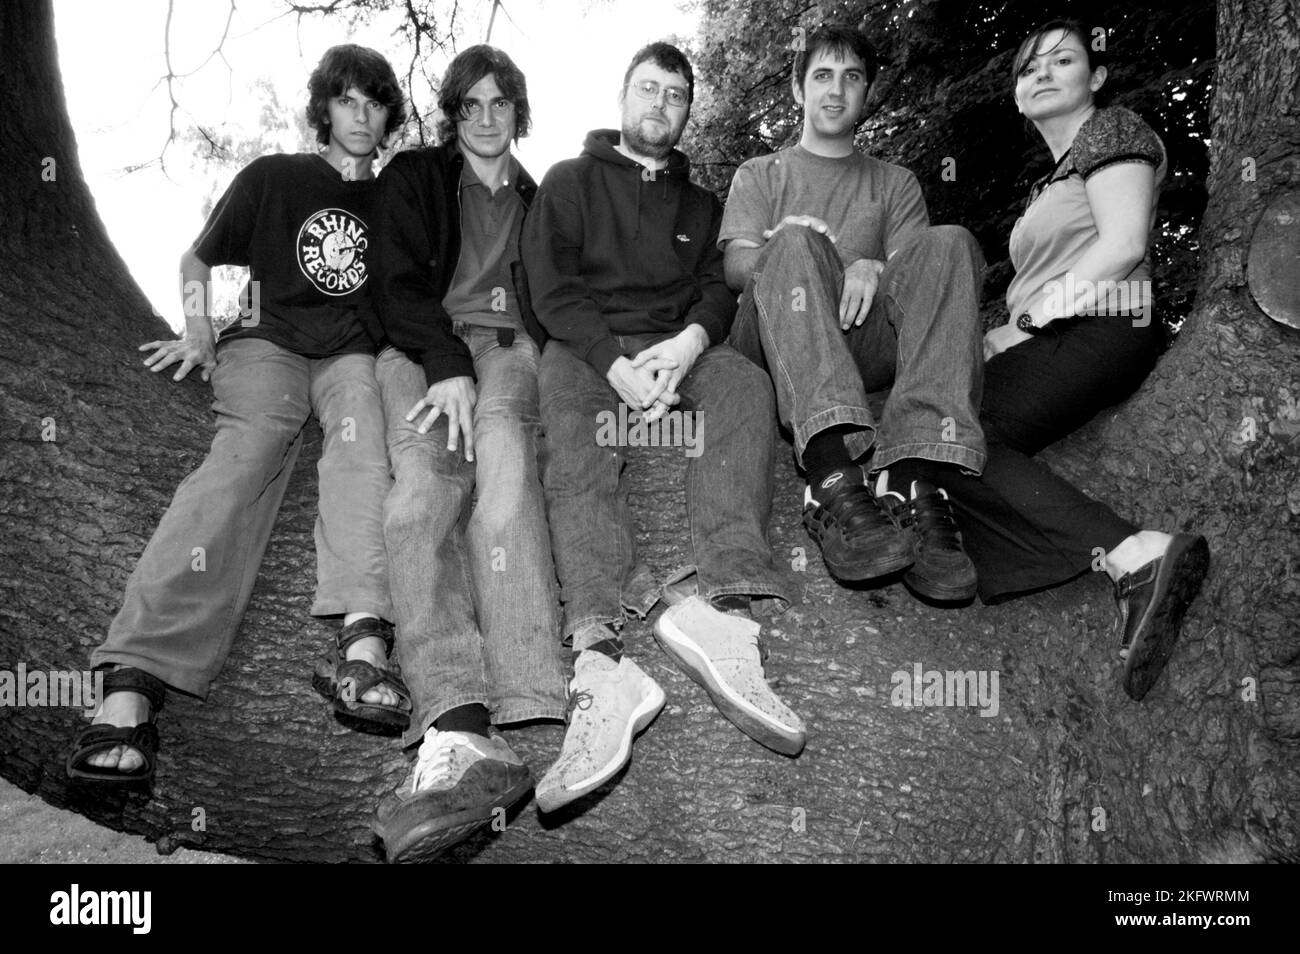 GORKY'S ZYGOTIC MYNCI Publicity Photographs scattata a Cardiff, 30 giugno 2003. Fotografia: ROB WATKINS. INFO: Gorky's Zygotic Mynci, un gruppo psichedelico e indie rock gallese attivo dai primi anni '90 ai primi anni '2000, ha creato un suono stravagante ed eclettico. Album come "Barafundle" hanno mostrato il loro approccio multilingue influenzato dal folk, rendendoli influenti nelle scene alternative e indie. Foto Stock